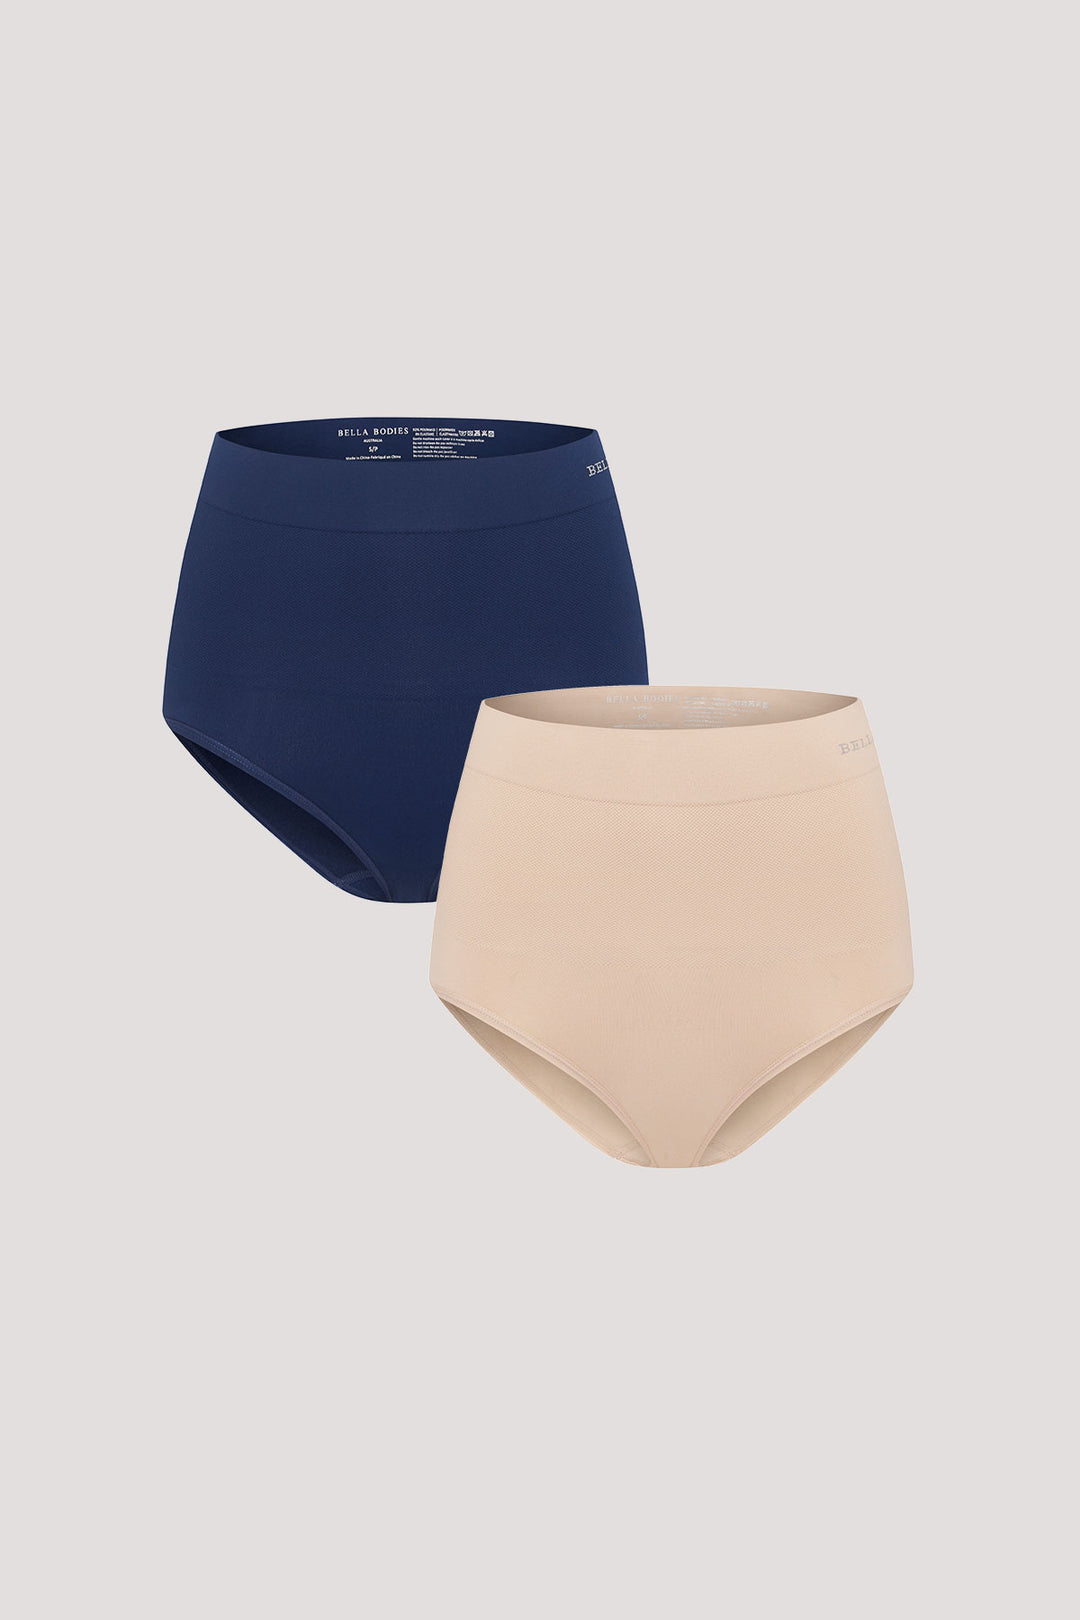 Women's slimming & firming high Waist underwear 2 Pack | Bella Bodies Australia | Navy & Sand